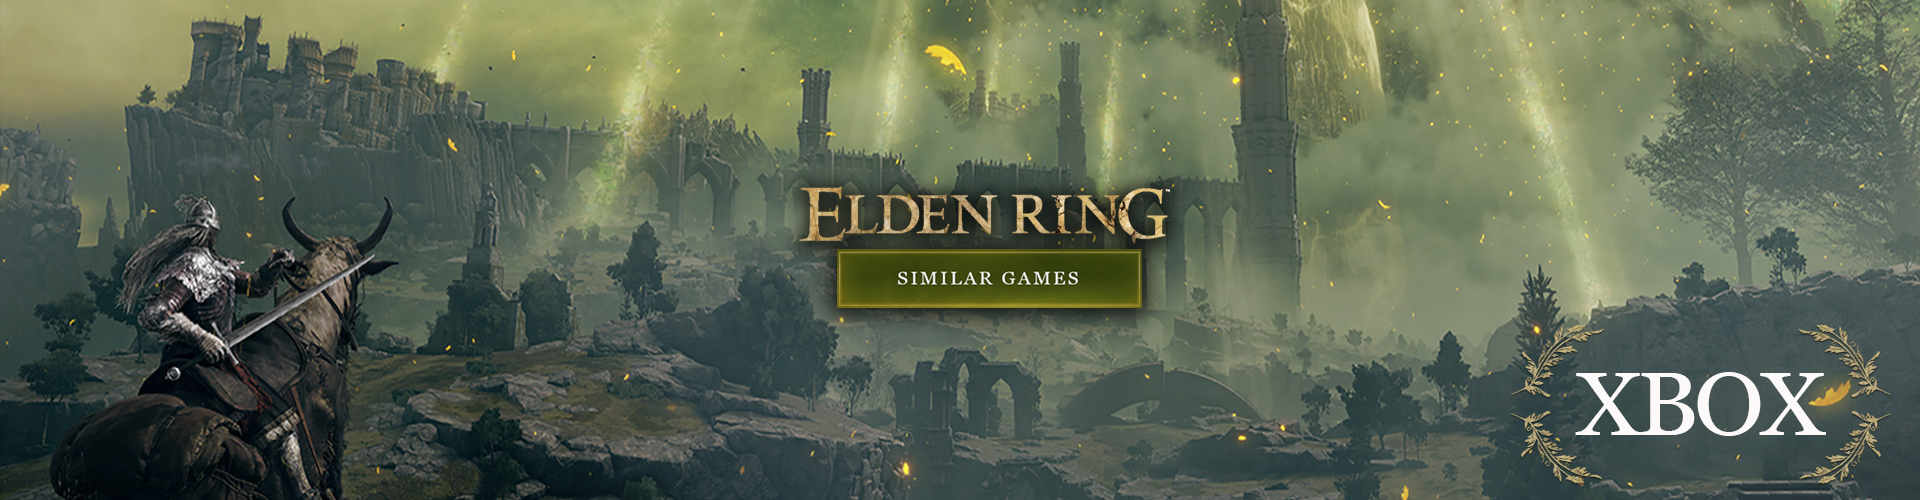 Xbox Games like Elden Ring